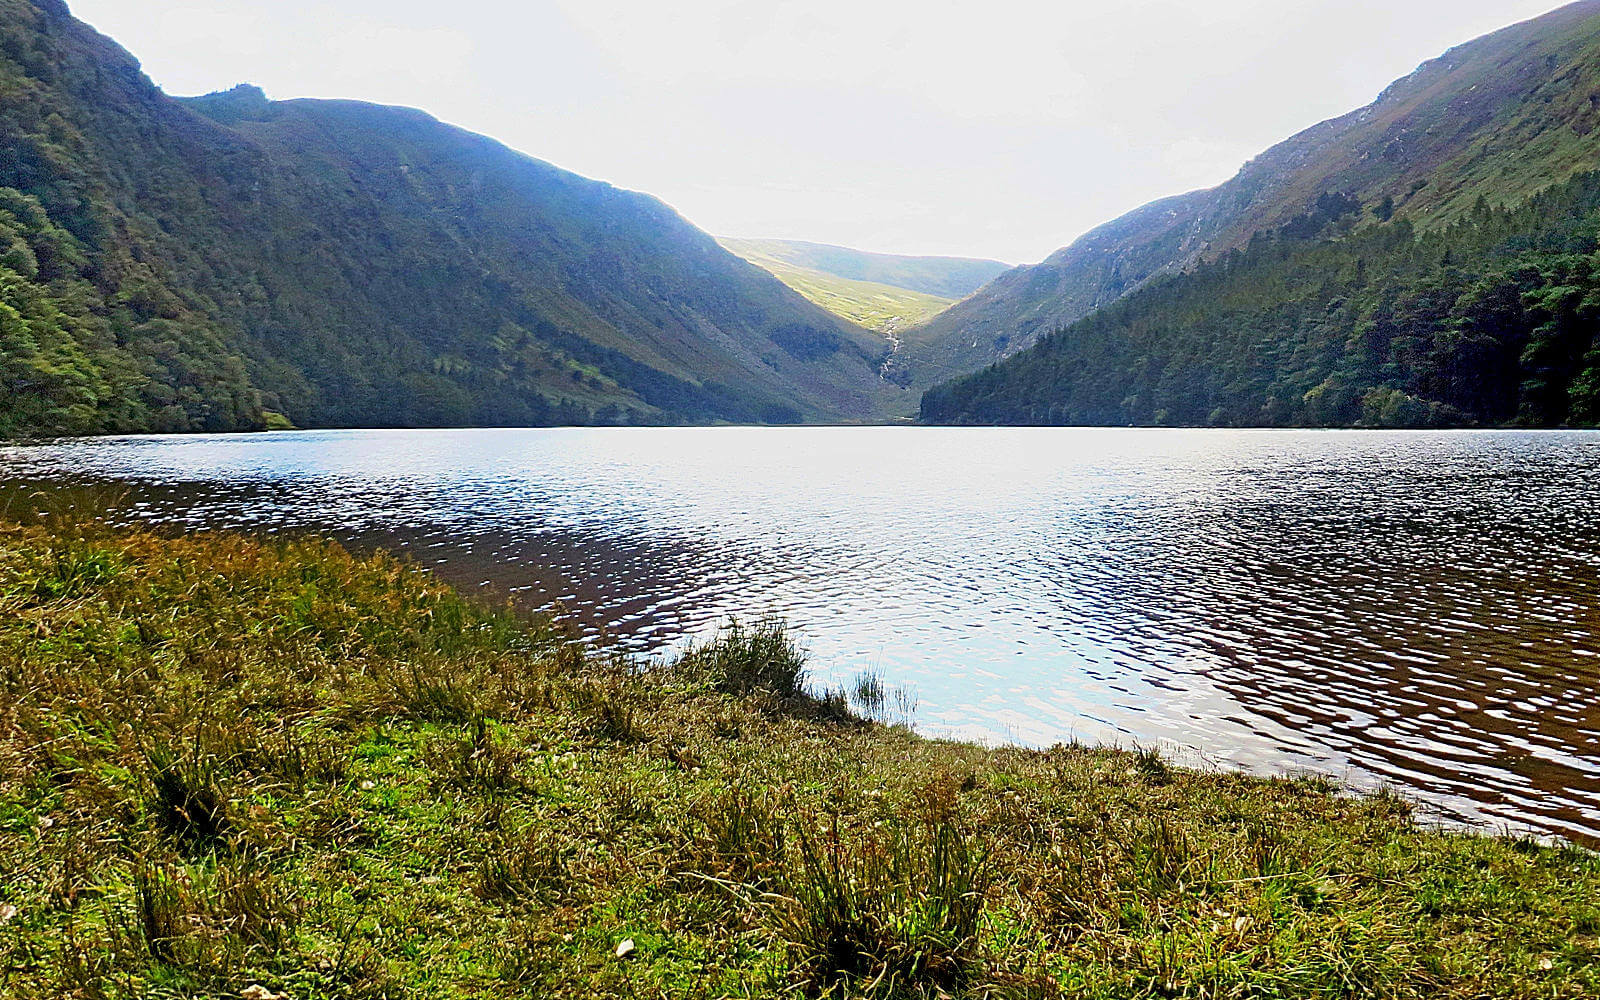 Hinter einem See türmen sich die grünbewachsenen Berge der Wicklow Mountains in Irland.